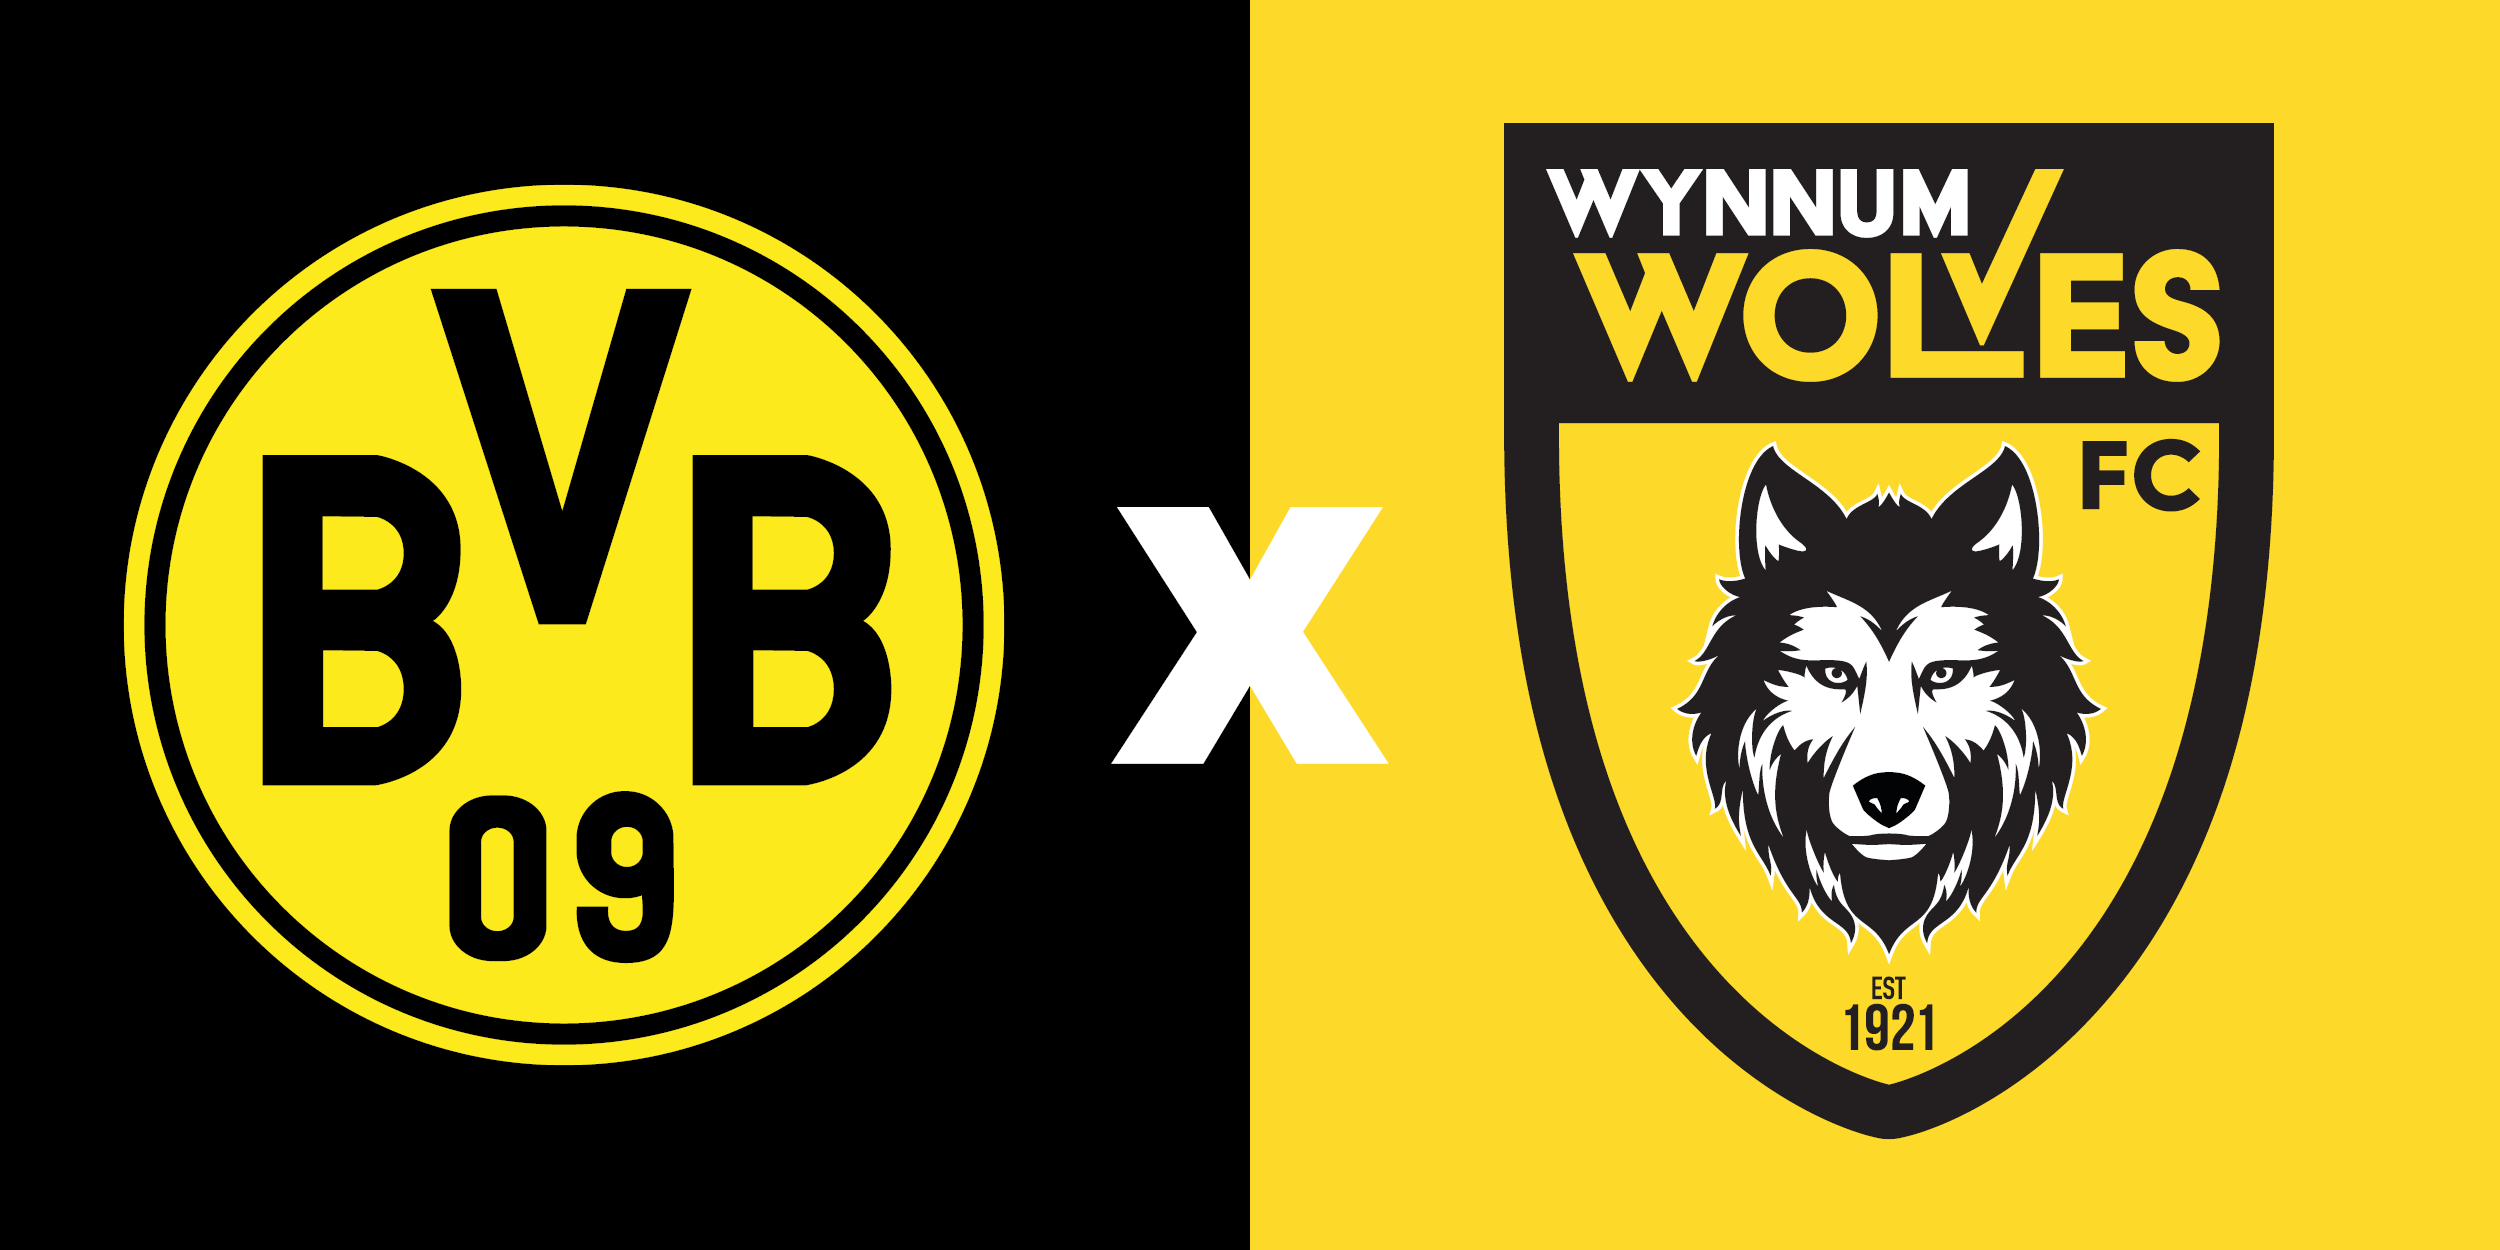 Wynnum Wolves partner with Borussia Dortmund